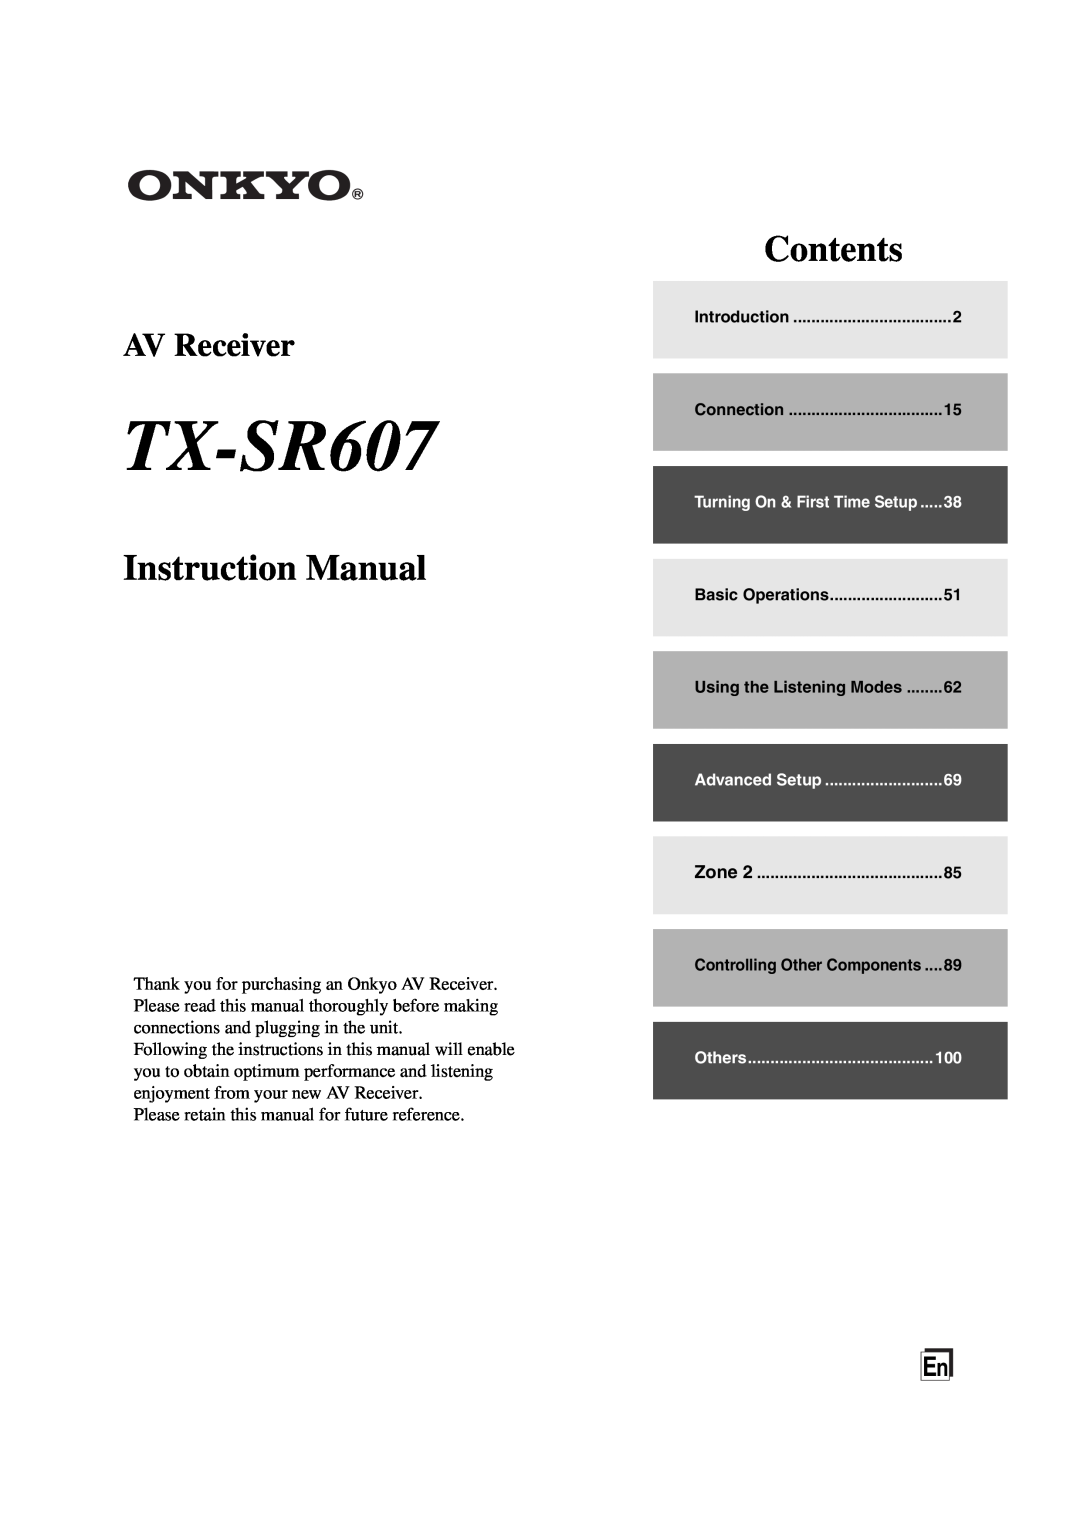 Onkyo instruction manual TX-SR607, Instruction Manual, Contents, AV Receiver 